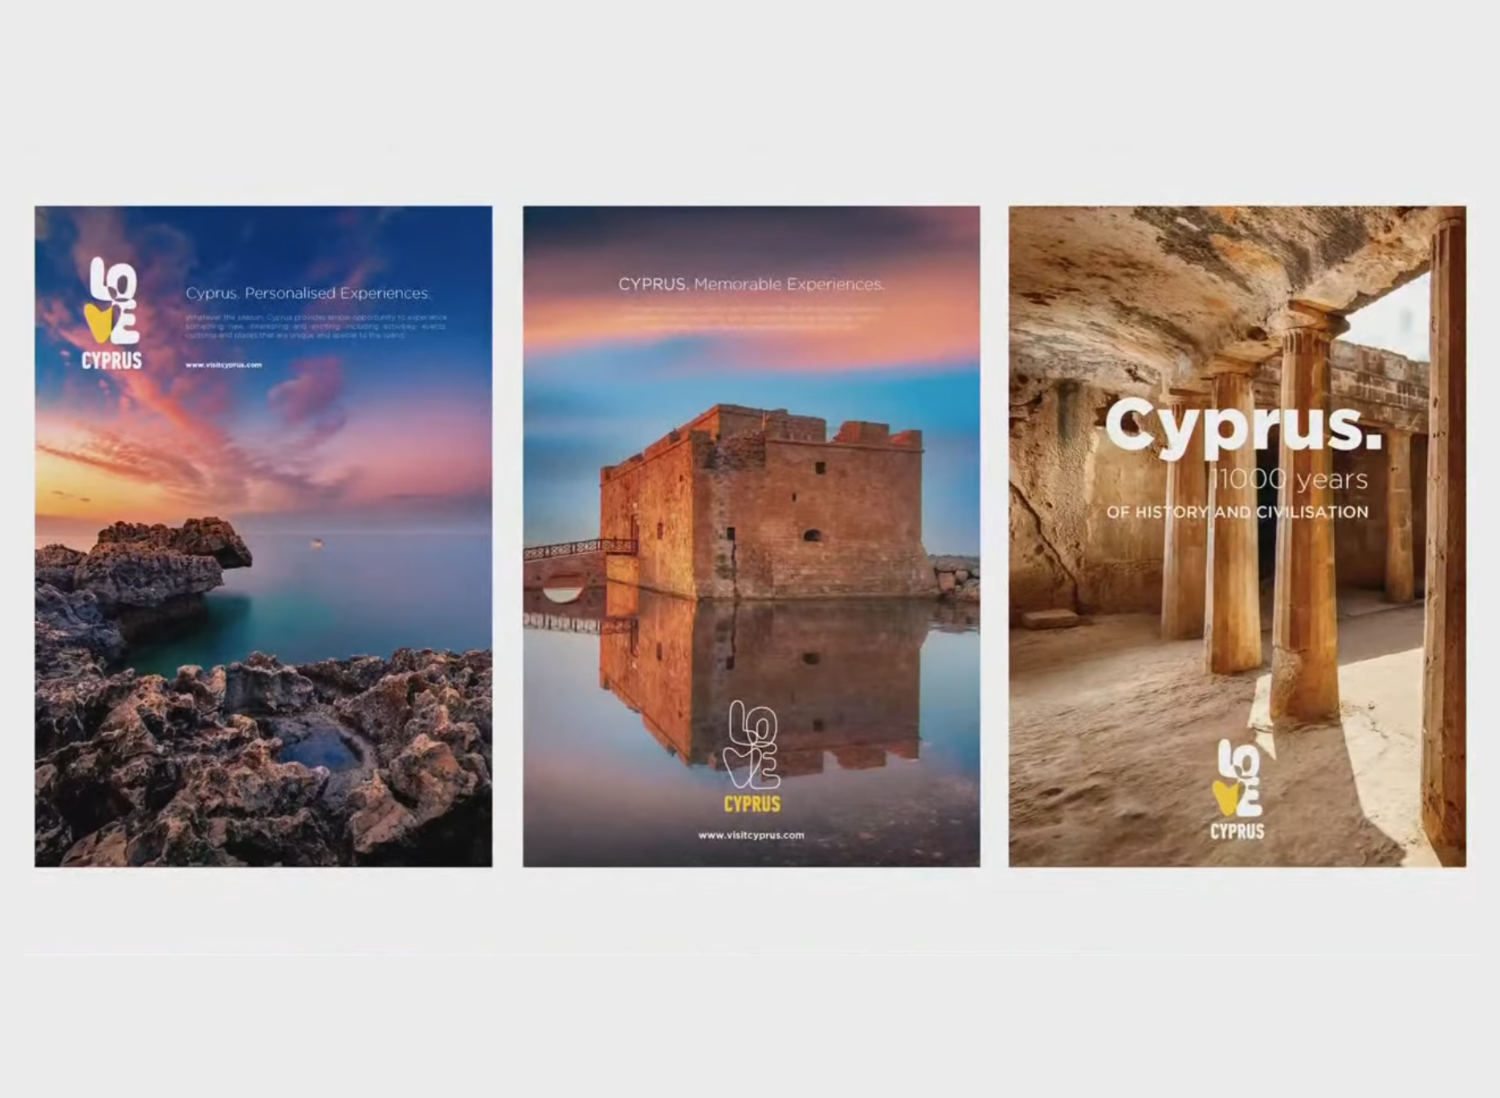 塞浦路斯海岸风景壁纸1366x768分辨率下载,塞浦路斯海岸风景壁纸,高清图片,壁纸,自然风景-桌面城市